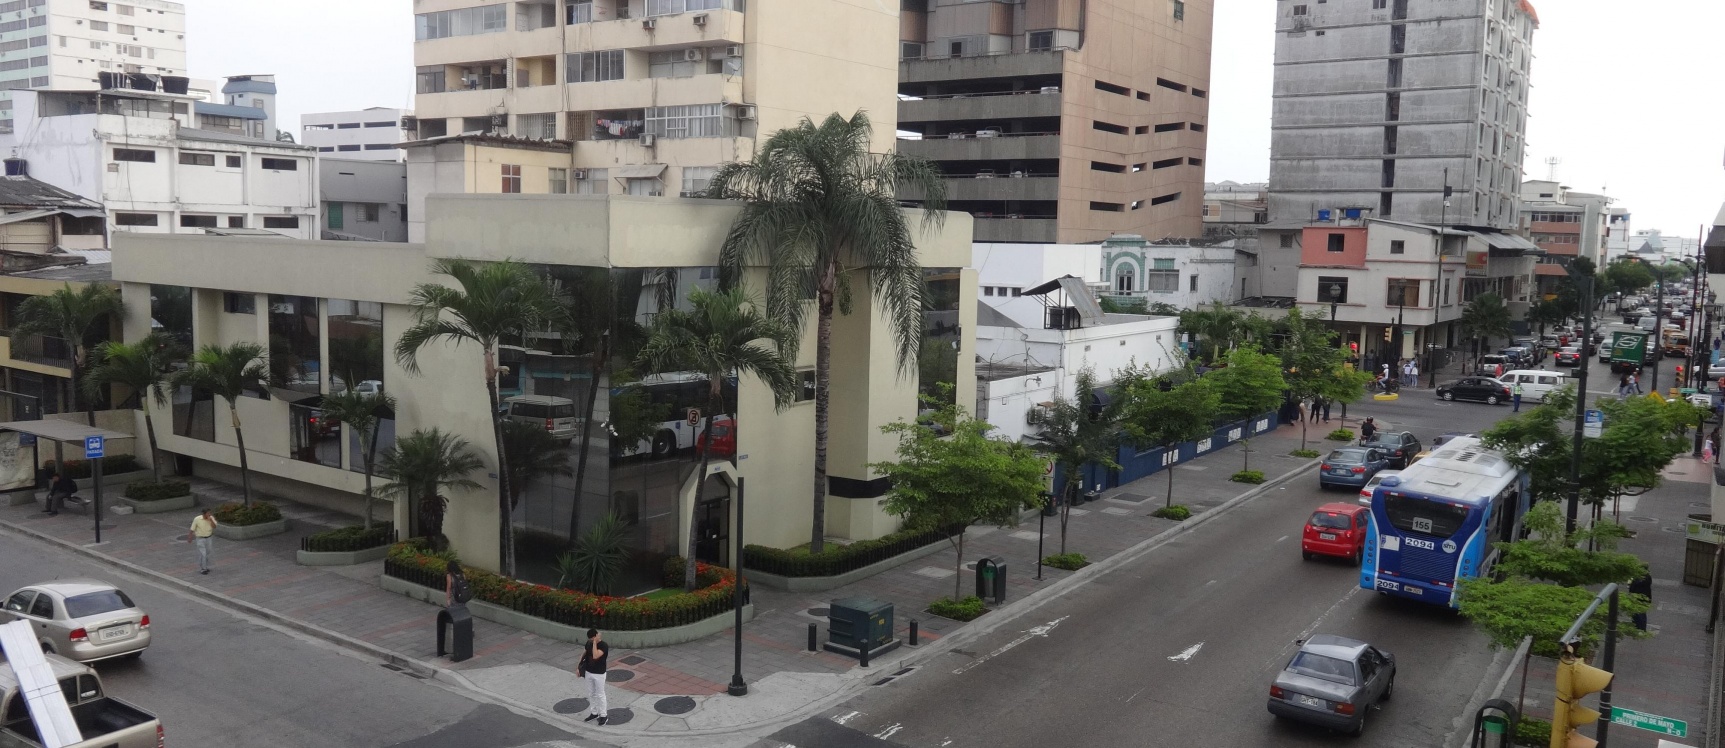 GeoBienes - Suite de venta, en el centro de la ciudad de Guayaquil - Plusvalia Guayaquil Casas de venta y alquiler Inmobiliaria Ecuador